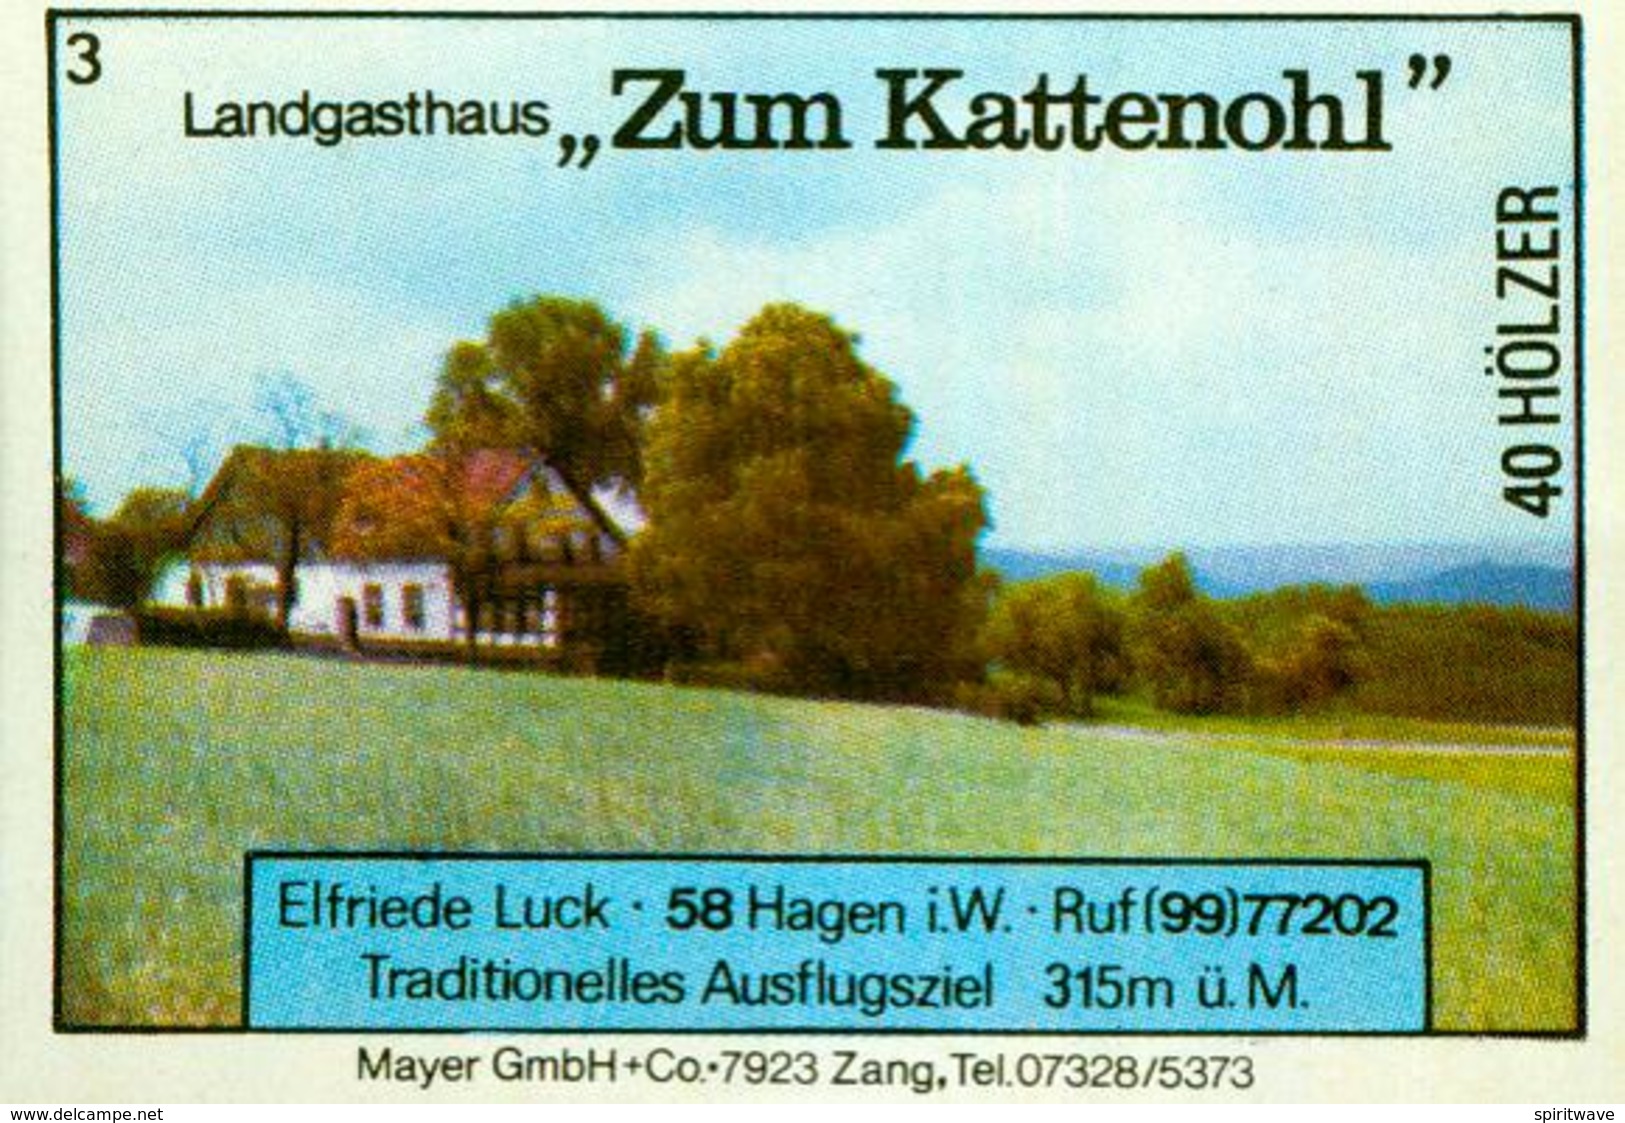 1 Altes Gasthausetikett, Landgasthaus Zum Kattenohl, Elfriede Luck, 5800 Hagen #232 - Matchbox Labels